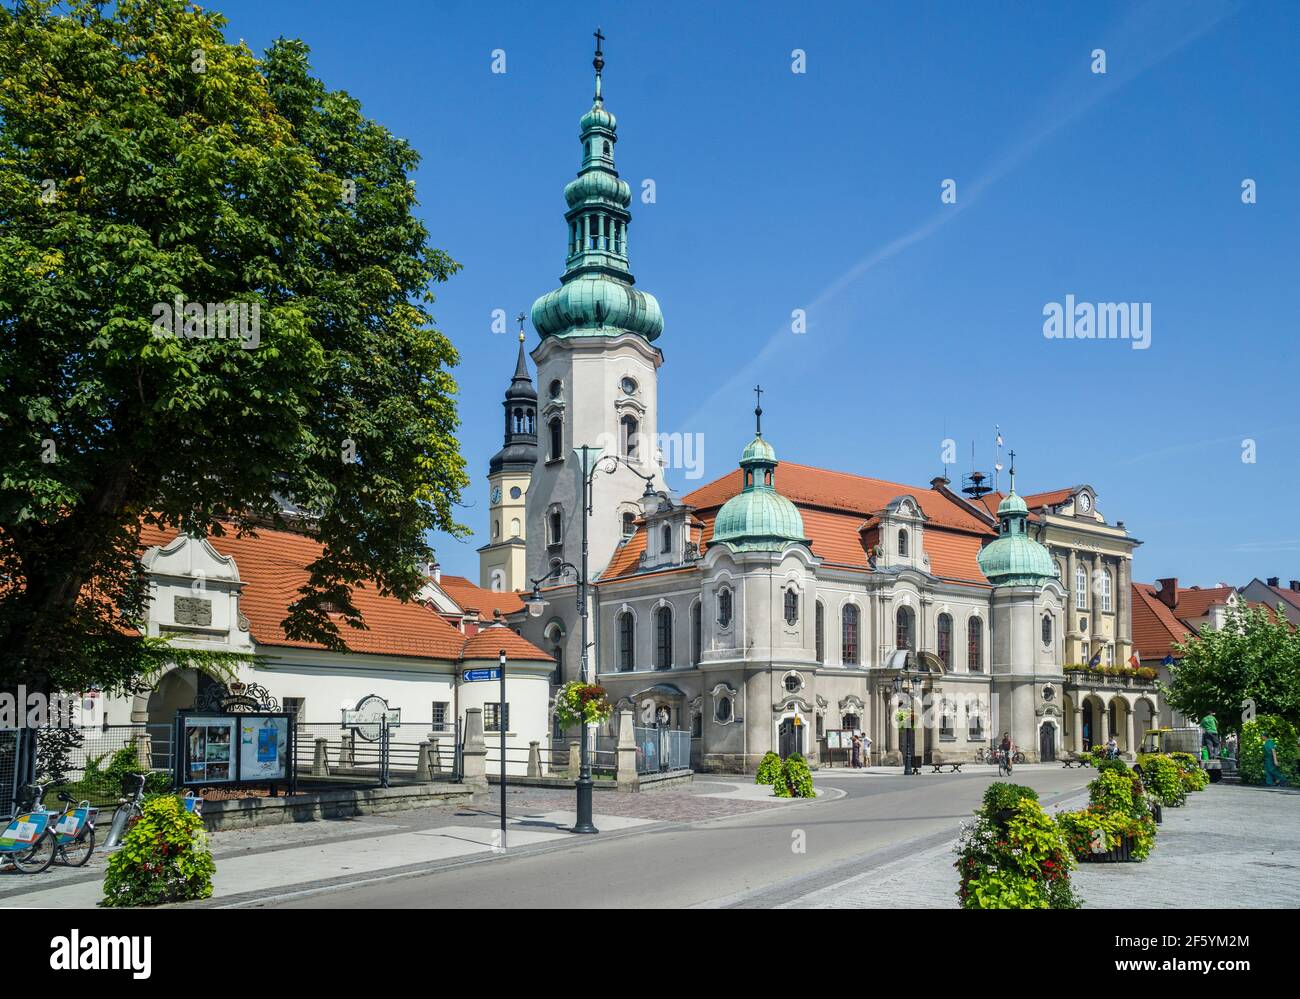 Polen, Schlesische Woiwodschaft, Pszczyna (Pless), Blick auf die neubarocke evangelische Kirche, vom Torhaus des Schlosses Pszczyna aus gesehen Stockfoto